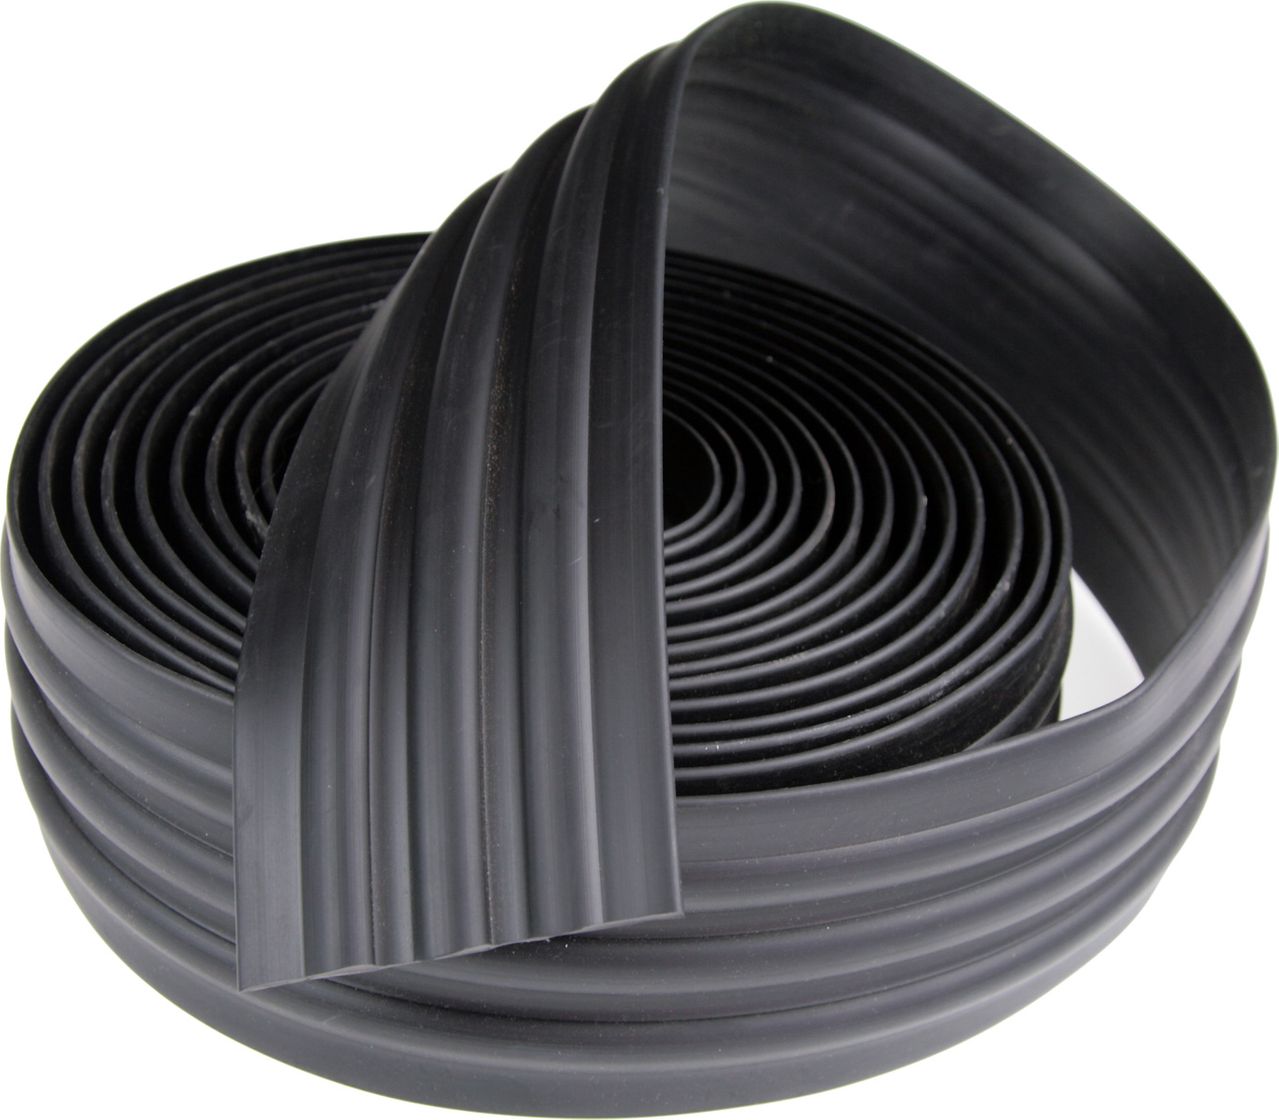 Лента дублирующая тип d1, черная, 70 мм (килевая) SSCL00008101 лента дублирующая черная 120 мм ad00000436